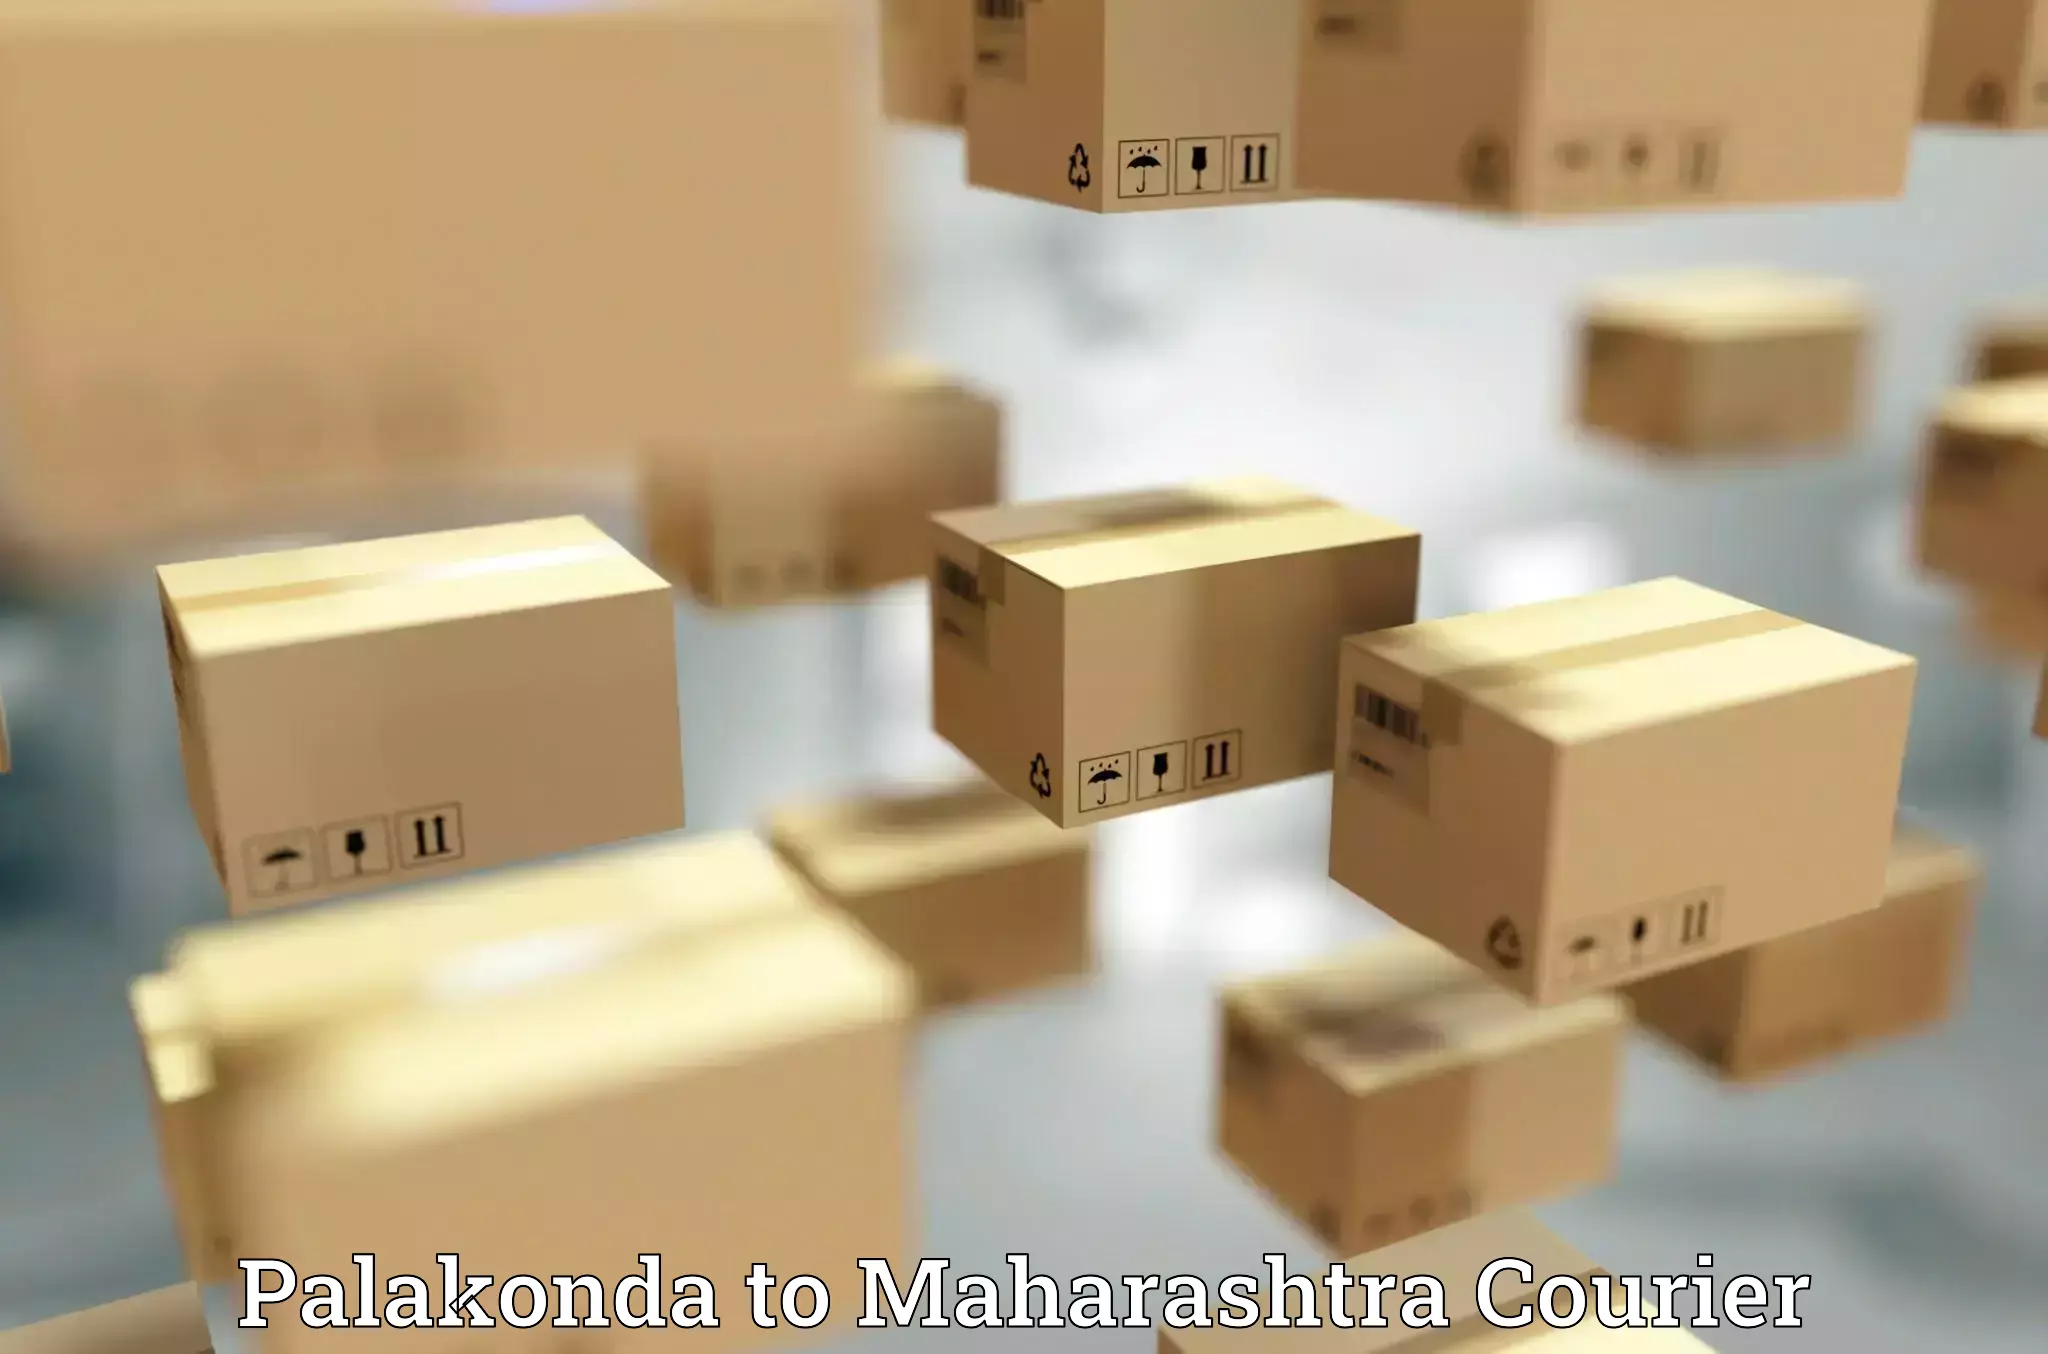 Cash on delivery service Palakonda to Yavatmal